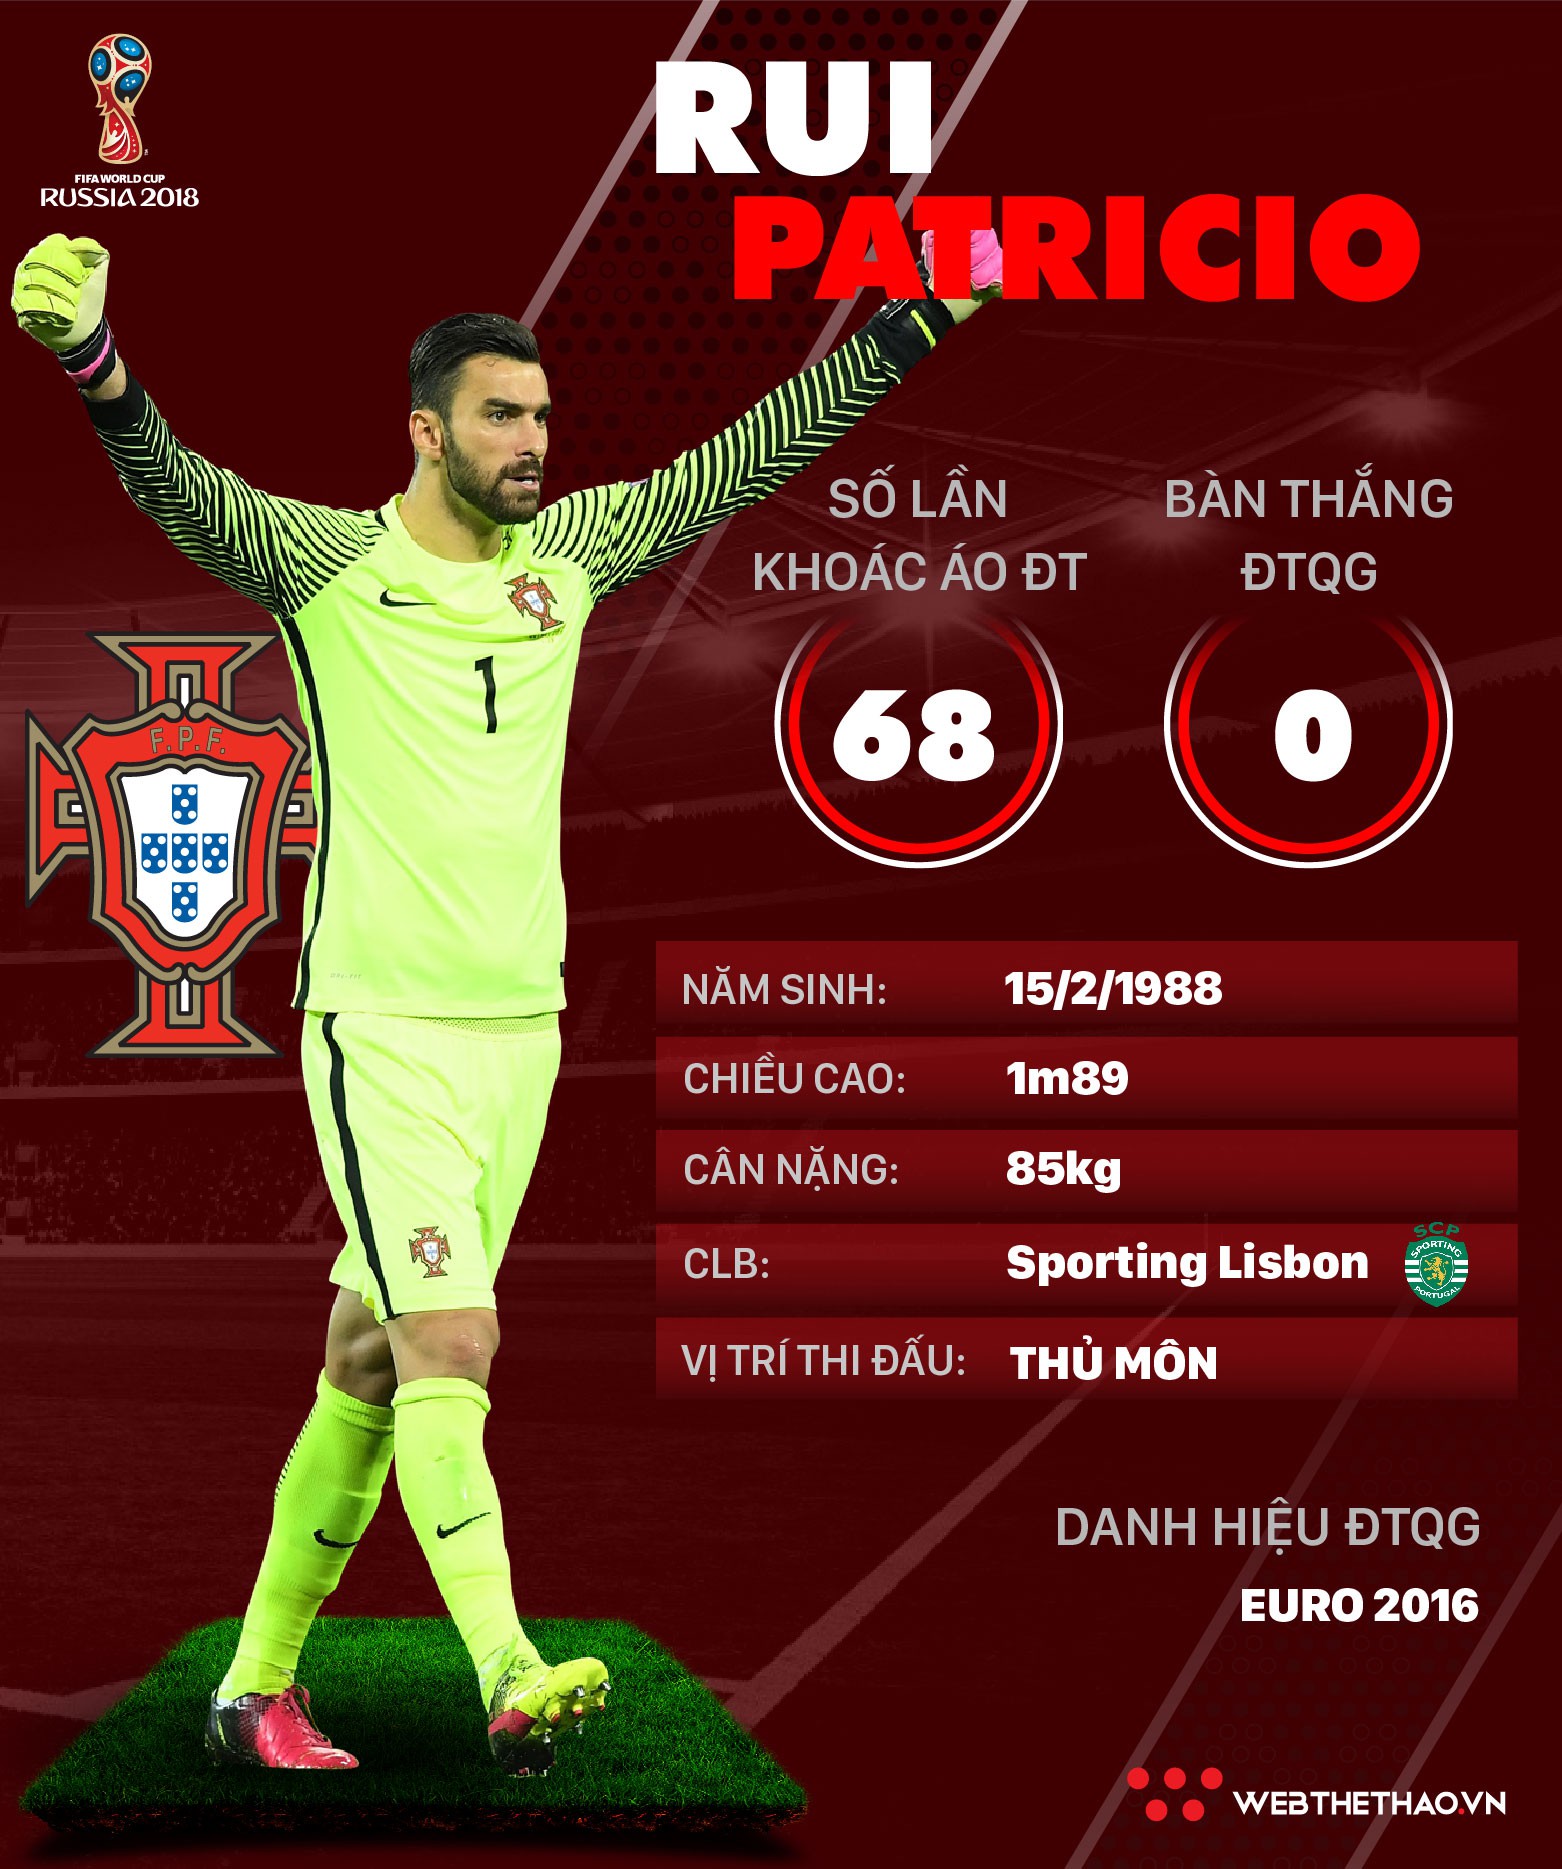 Thông tin cầu thủ Rui Patricio của ĐT Bồ Đào Nha dự World Cup 2018 - Ảnh 1.